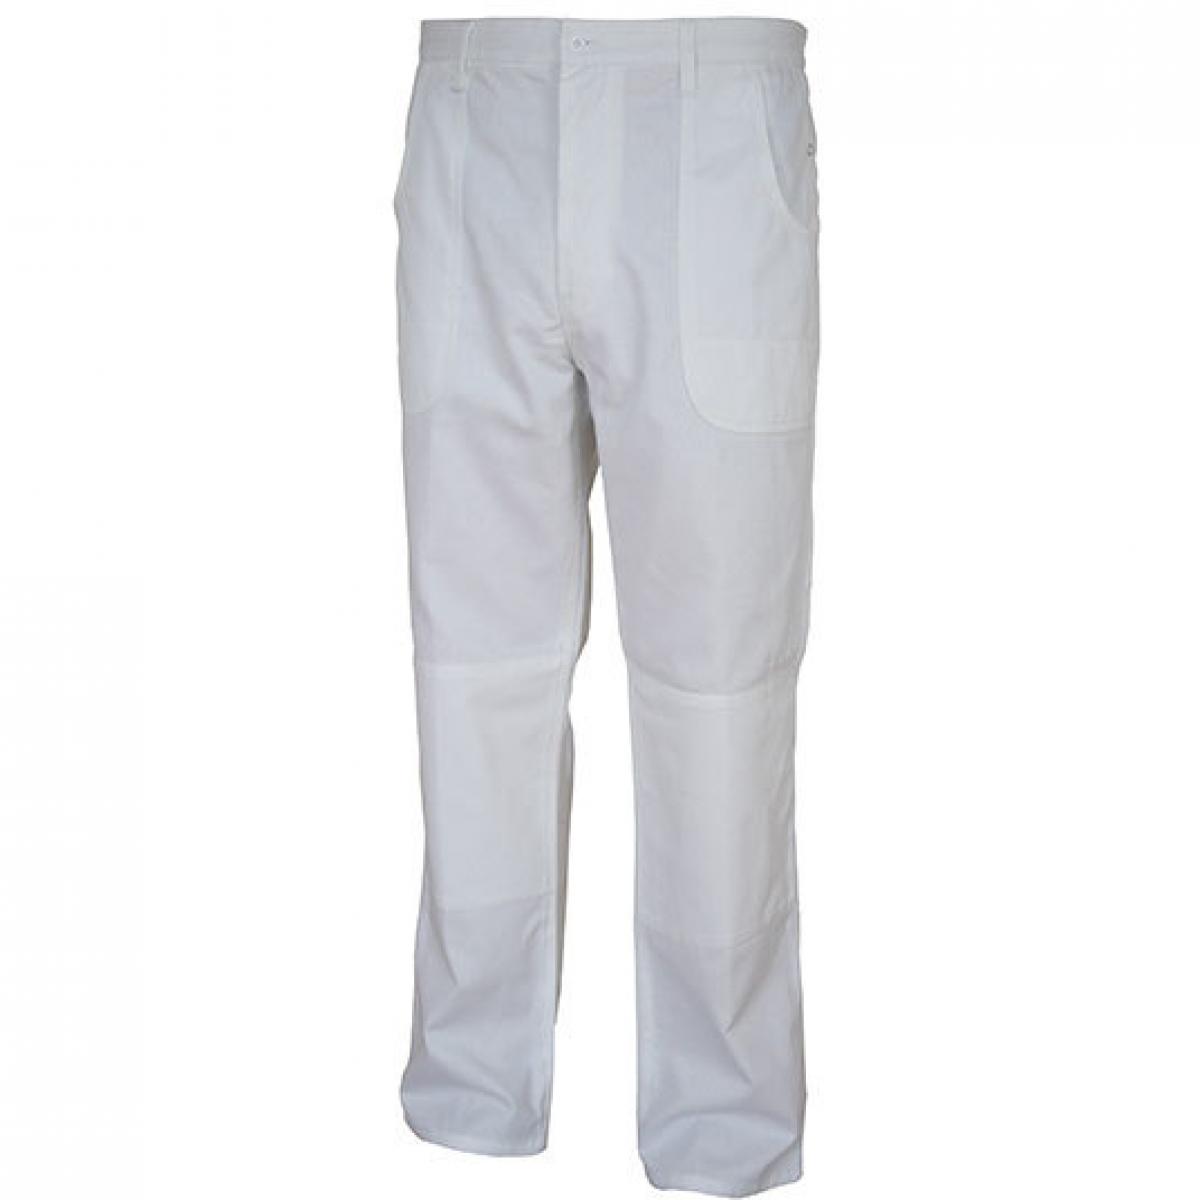 Hersteller: Carson Classic Workwear Herstellernummer: KTH709H Artikelbezeichnung: Herren Classic Work Pants Arbeitshose / Bei 60 Grad waschbar Farbe: White